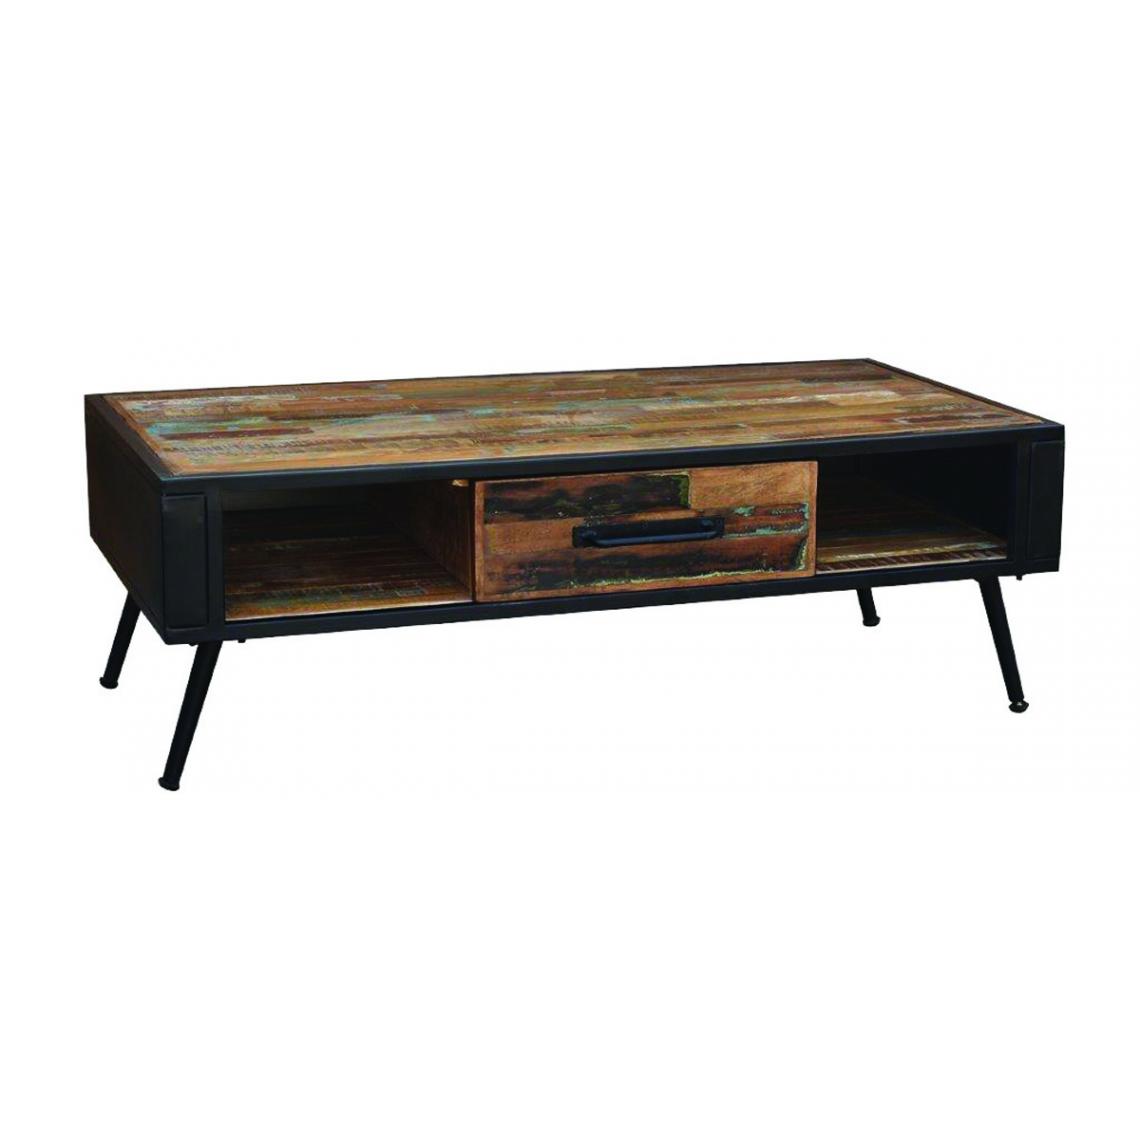 Pegane - Table basse en bois de manguier et acier laqué noir - Longueur 120 x Profondeur 60 x hauteur 40 cm - Tables basses